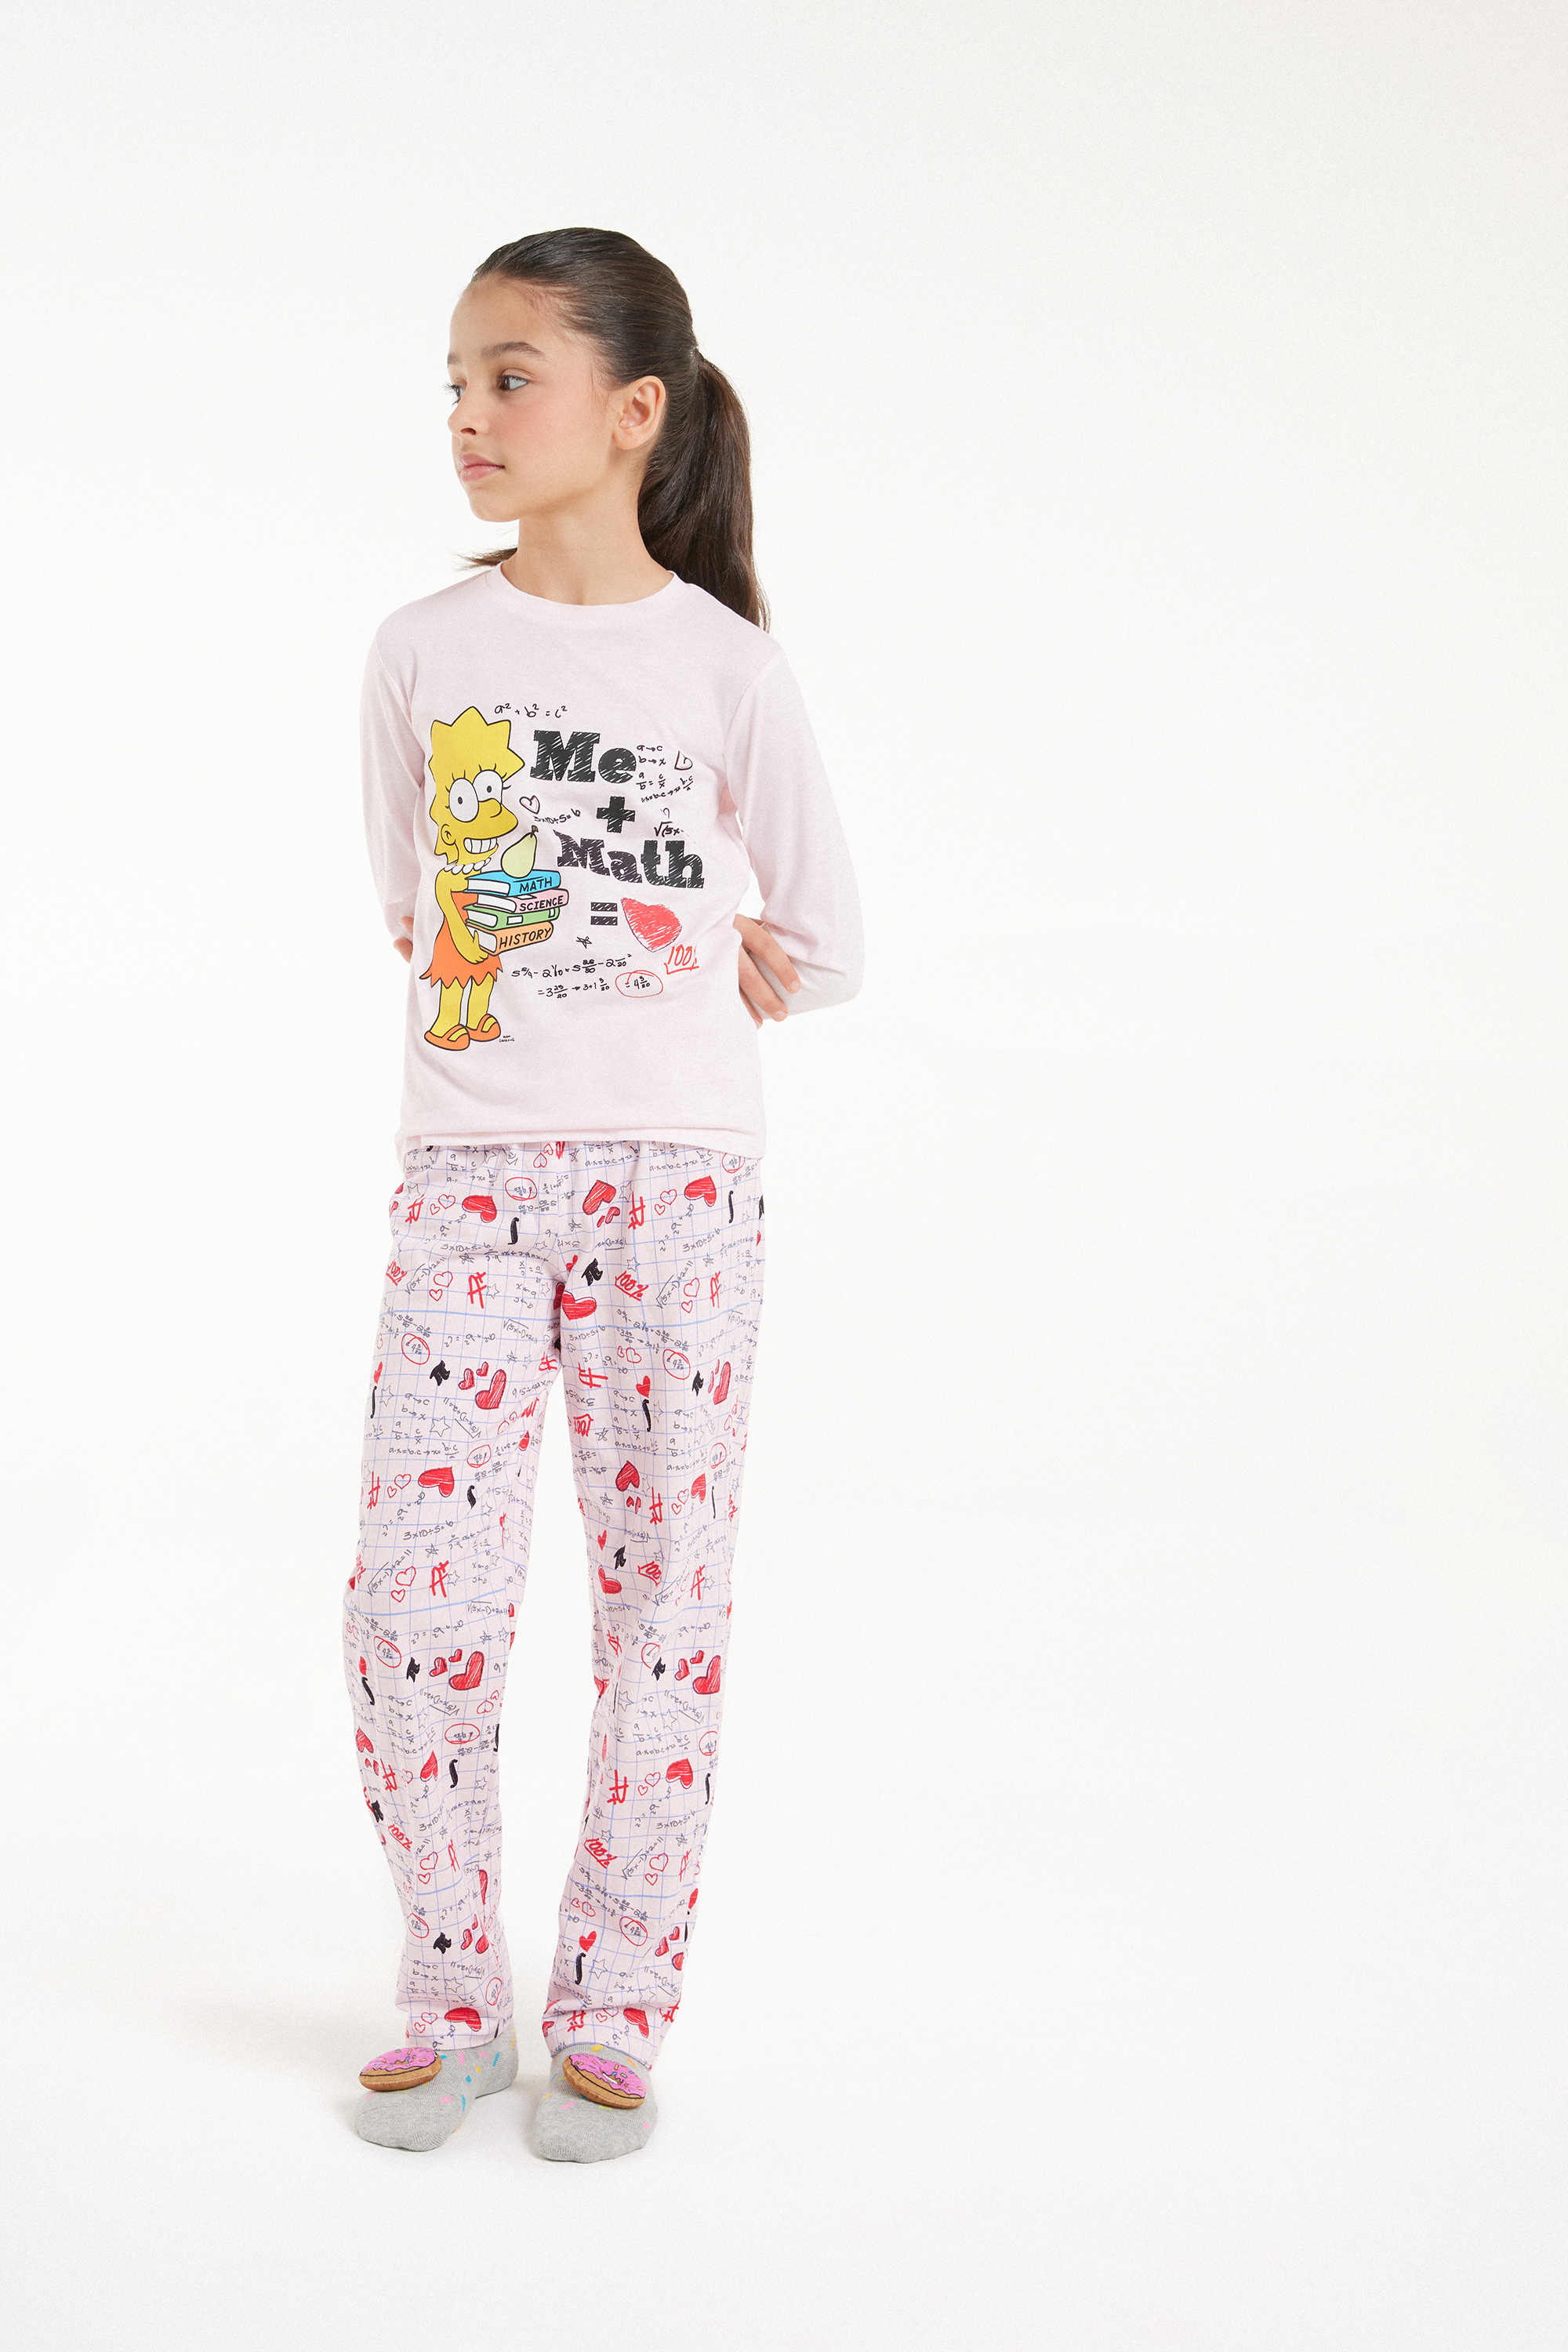 The Simpsons Print Long Pyjamas